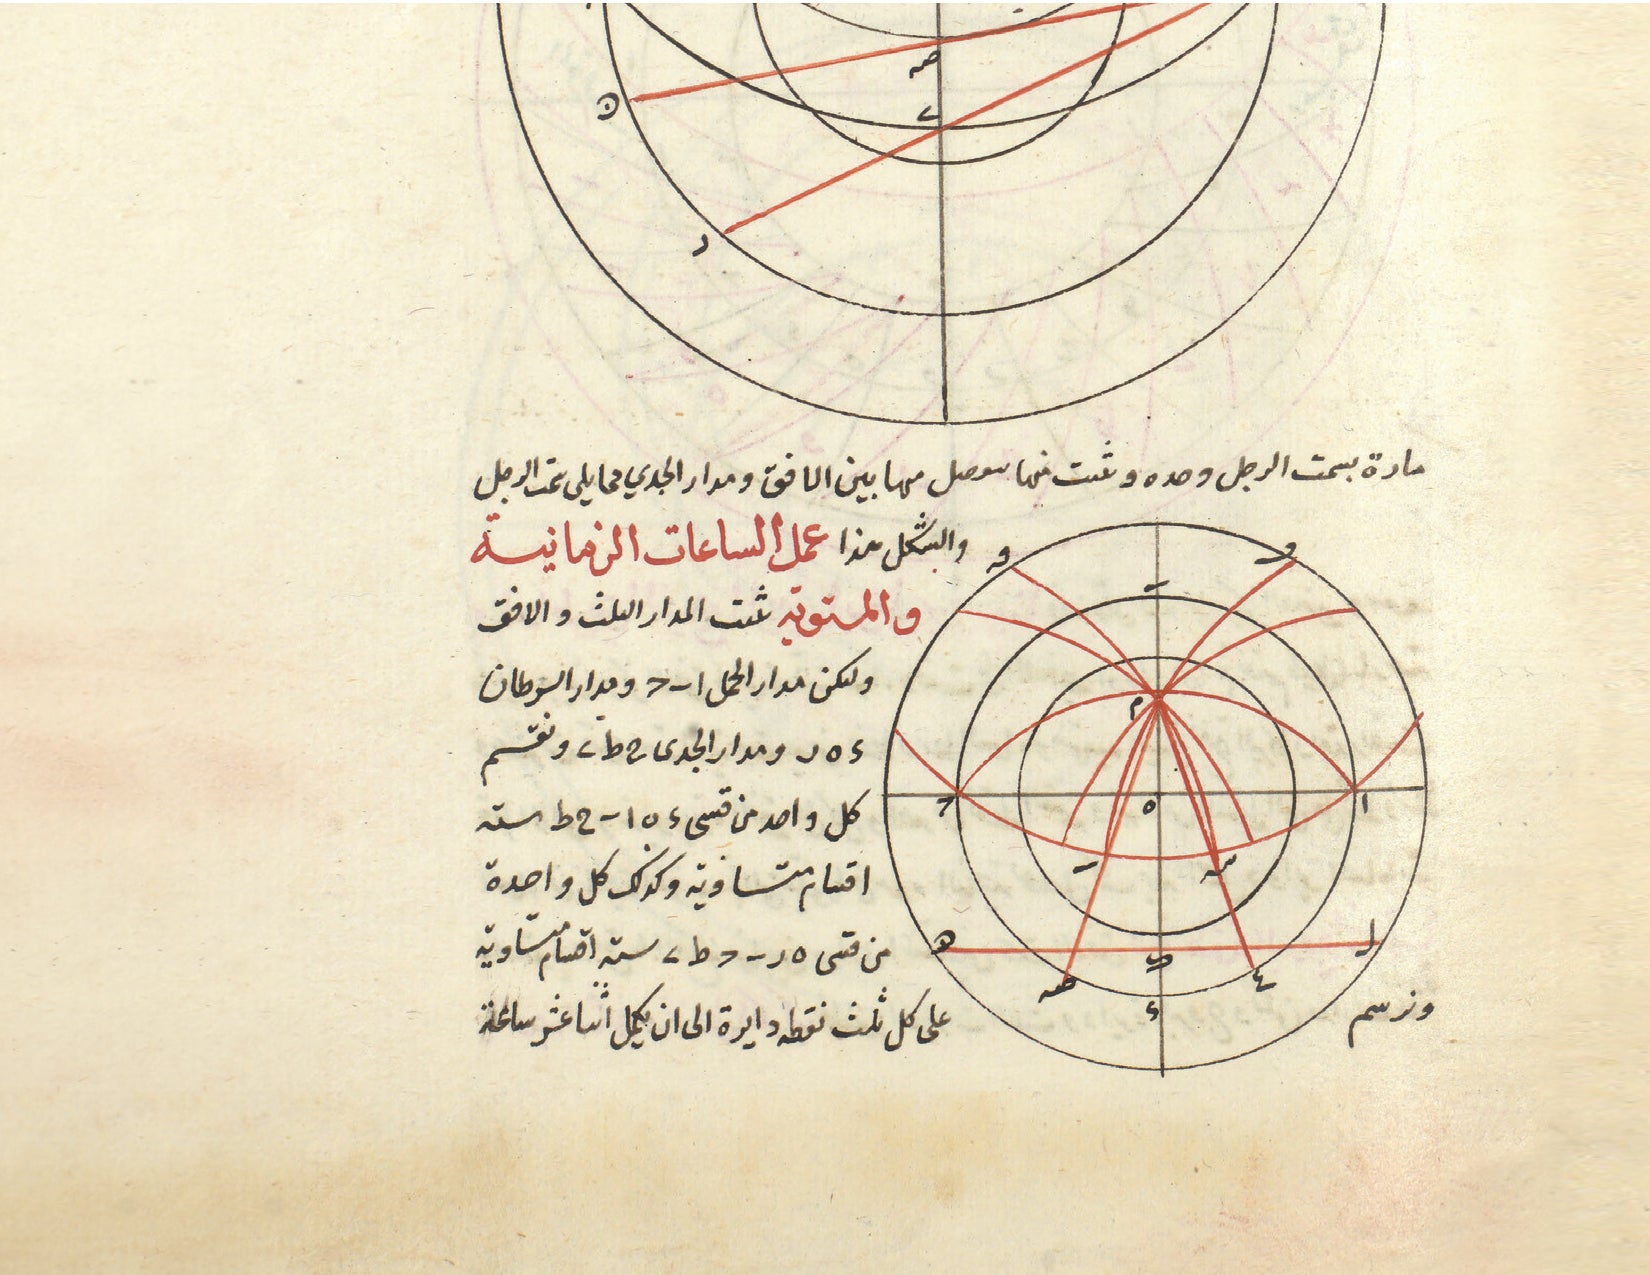 Arabic manuscript with circular diagrams.